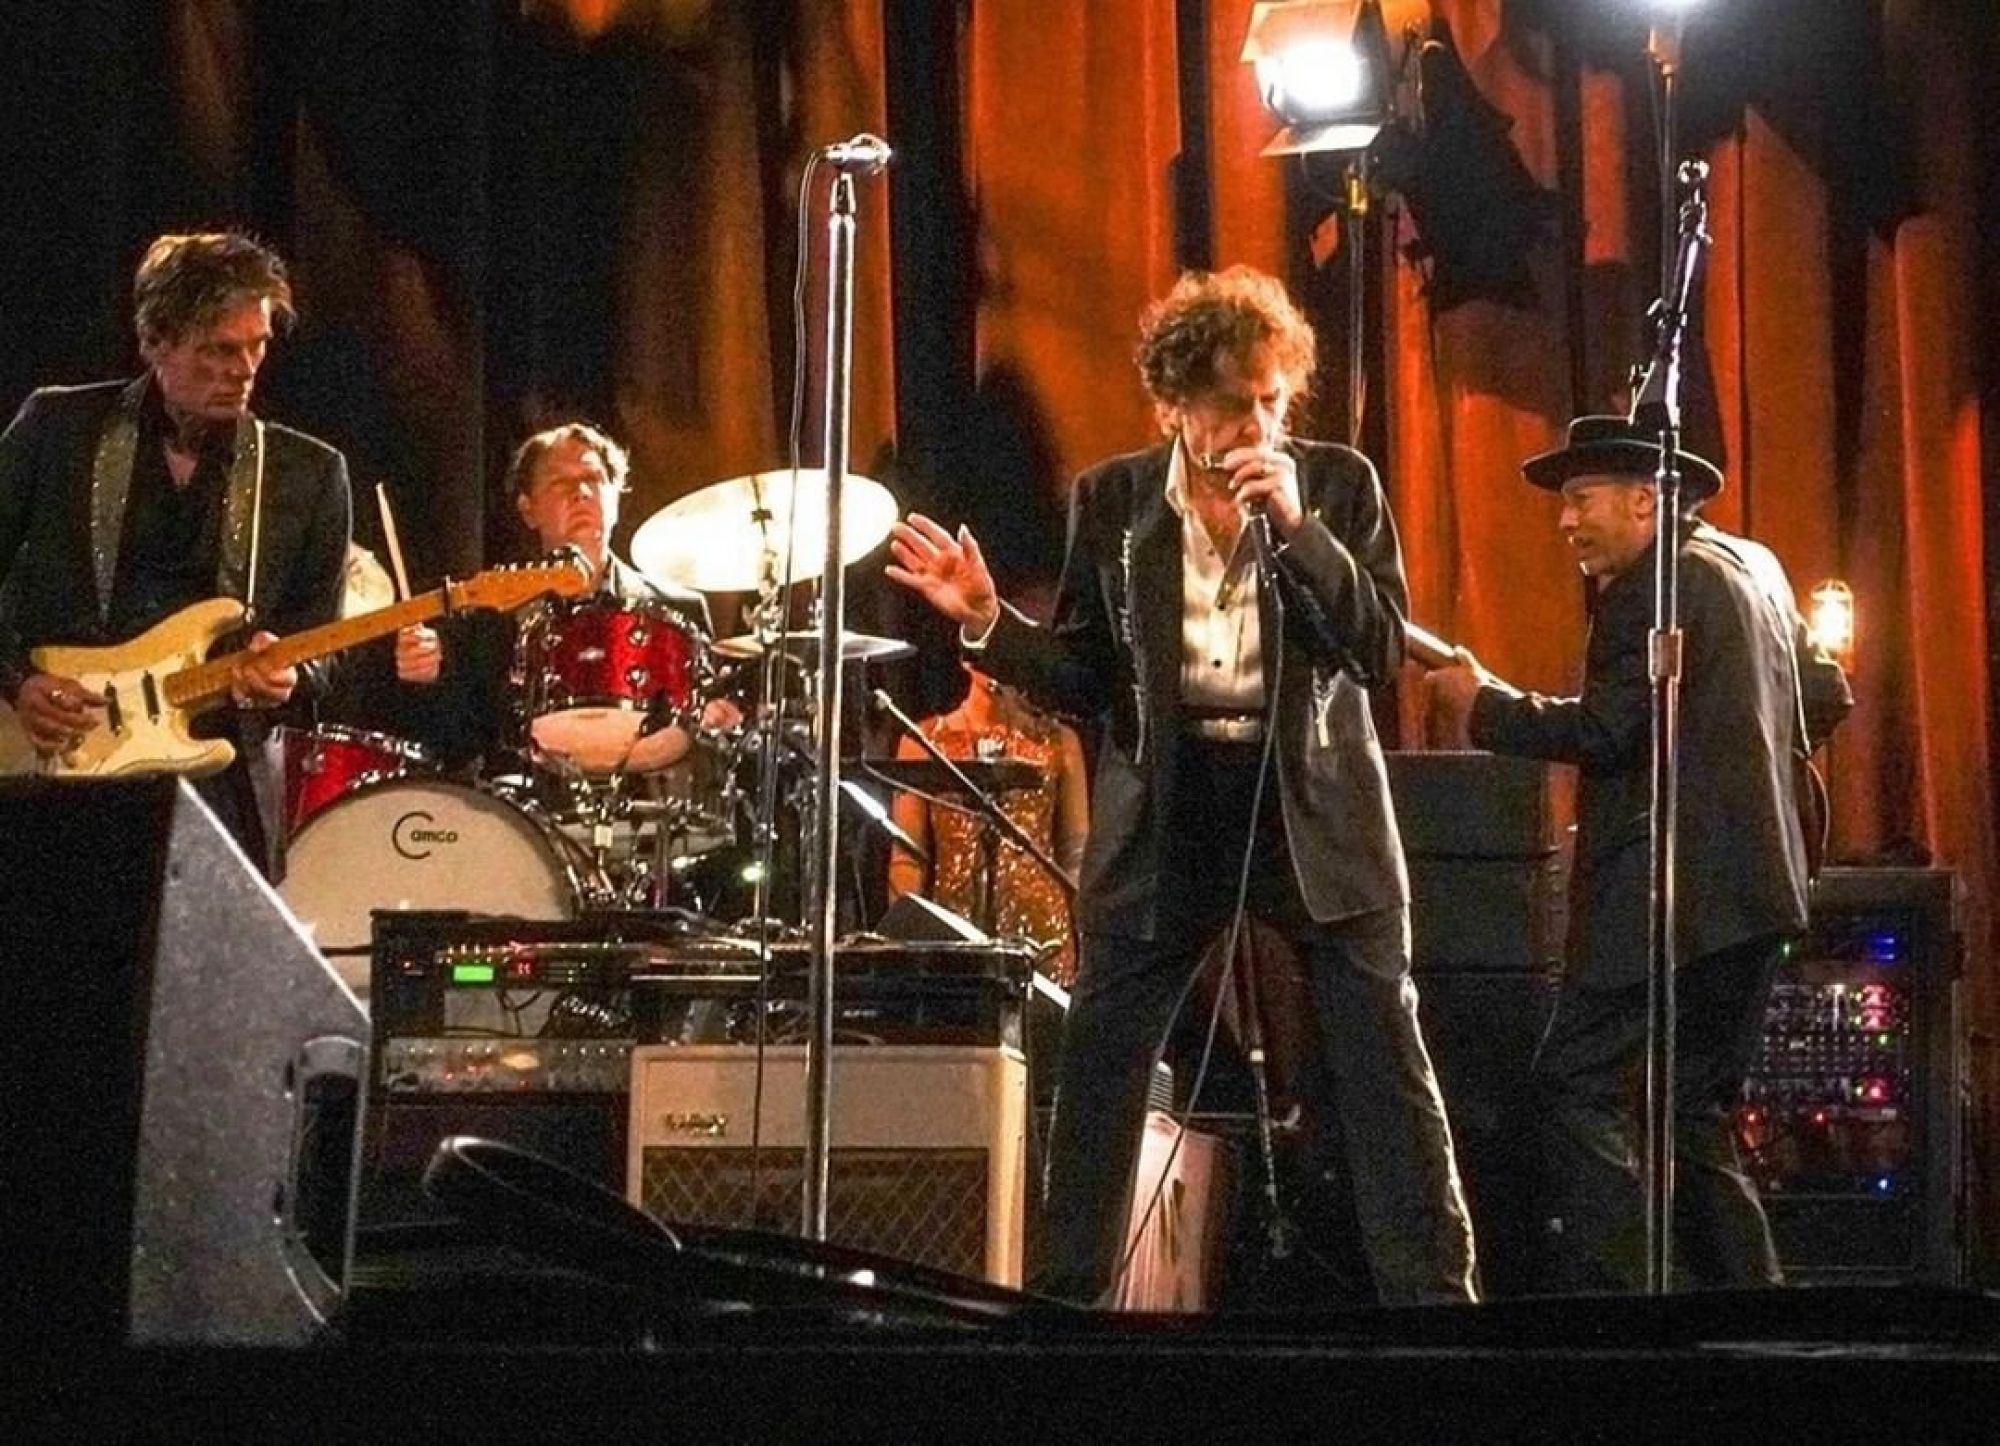 Боб Дилан впервые за 8 лет опубликовал новую песню, посвятив её убийству Кеннеди